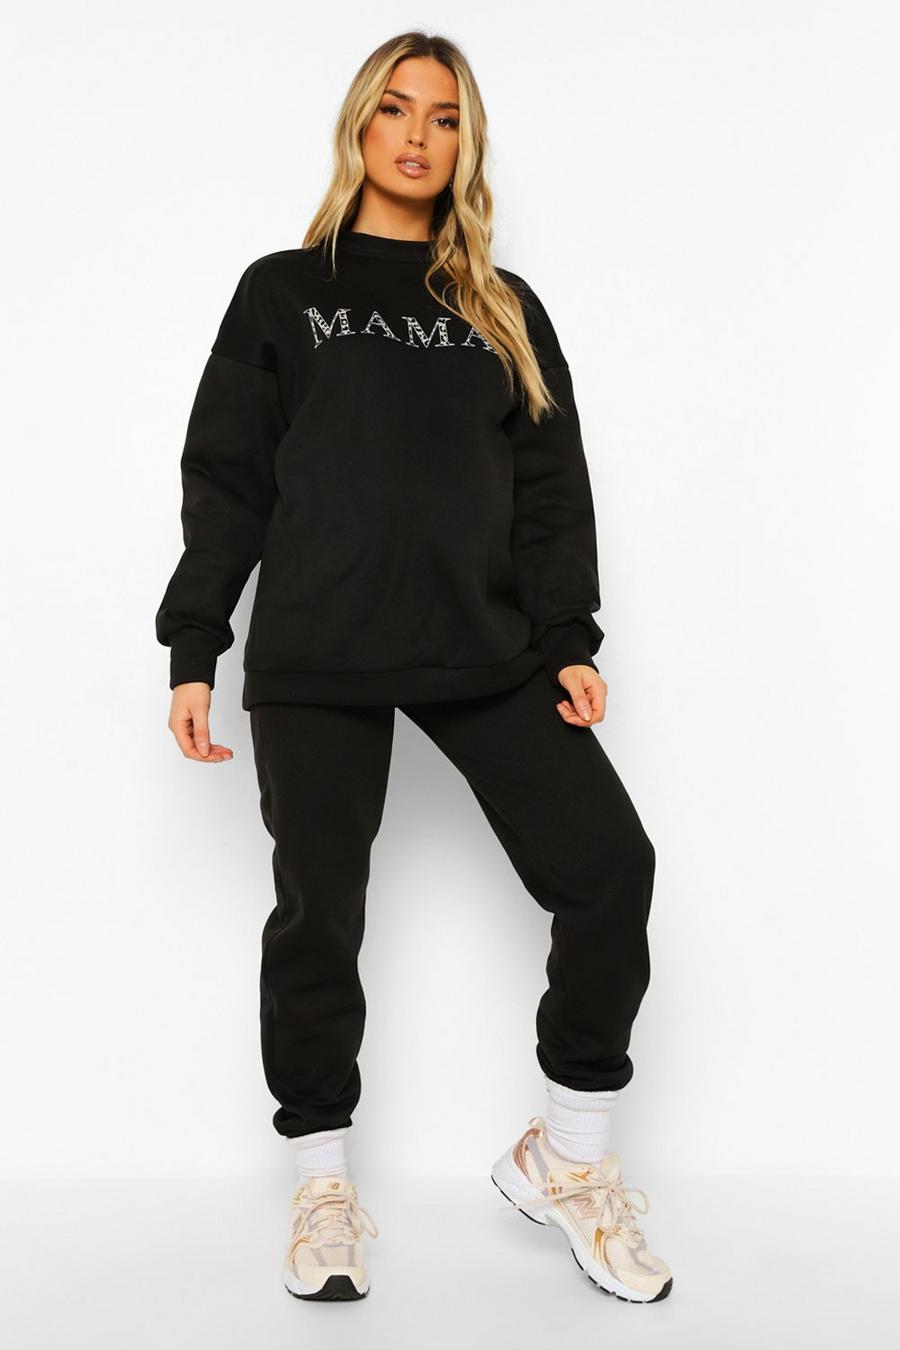 Umstandsmode Sweatshirt-Trainingsanzug mit Mama-Print und Leopardenmuster, Schwarz black